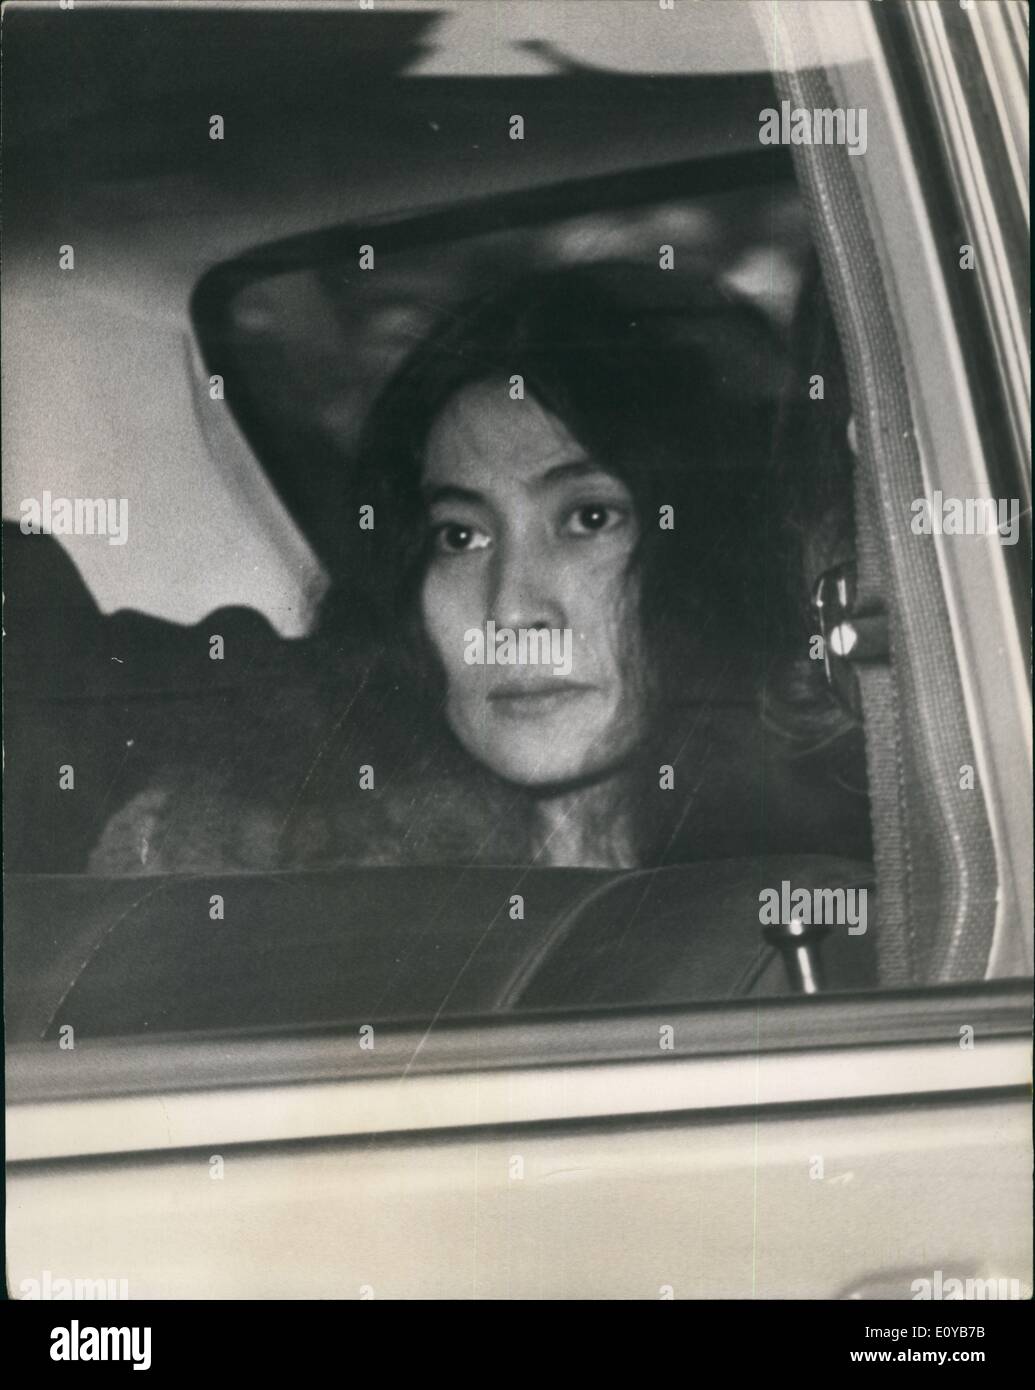 10 octobre 1969 - Beatle John Lennon sur la taxe sur les drogues : John Lennon des Beatles, et son ami Yoko Ono Cox, l'actrice japonaise, ont été arrêtés par des officiers de l'armée écossaise Burg Squad à Londres hier, ont été inculpés dans deux counta les postes illégaux de cannabis et d'obstruction à la police dans l'exécution d'un mandat de perquisition. Ils ont été renfloués sur la somme de &livre;100 pour eux-mêmes et n caution de &livre;100 et seront présentés aujourd'hui au tribunal de Marylebone. Trois détectives et une femme de police ont fait un floqué au rez-de-chaussée dans la place du montage, Marylebone, hier Banque D'Images